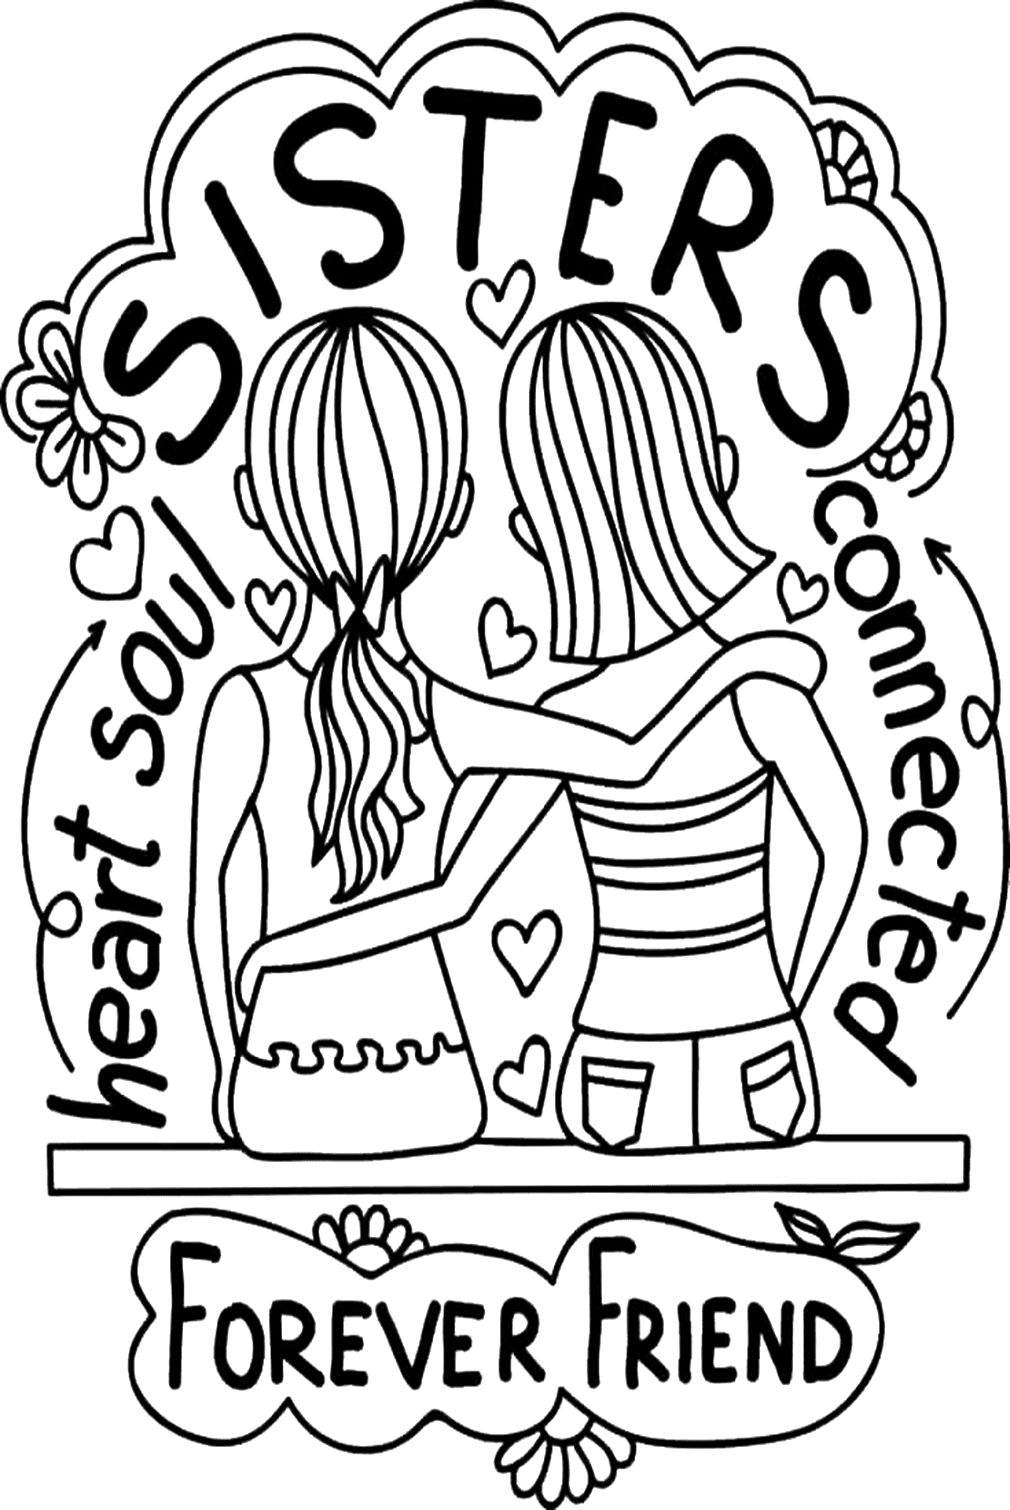 شعار على صفحة تلوين يوم الأخوات من يوم الأخوات